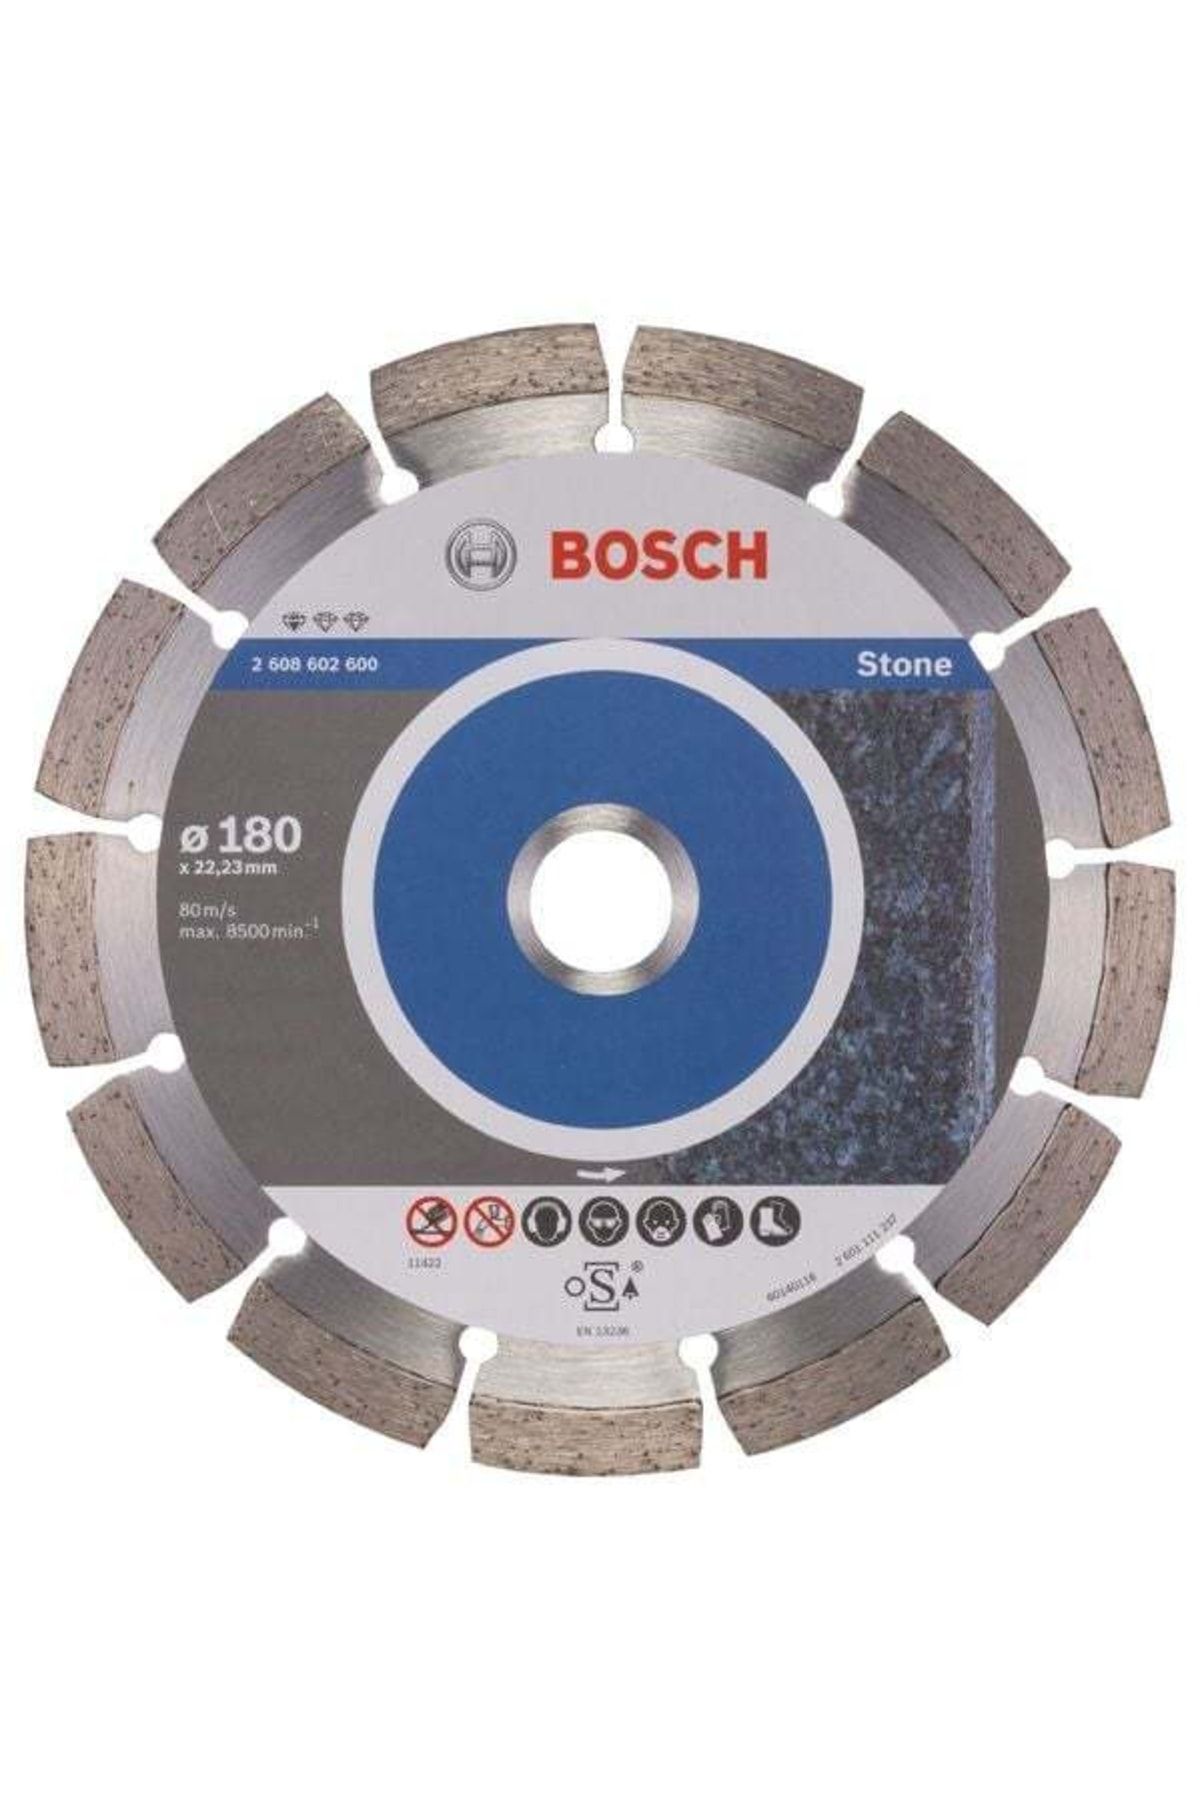 Bosch Granit Ve Doğal Taşlar Için Elmas Testere 180 Mm